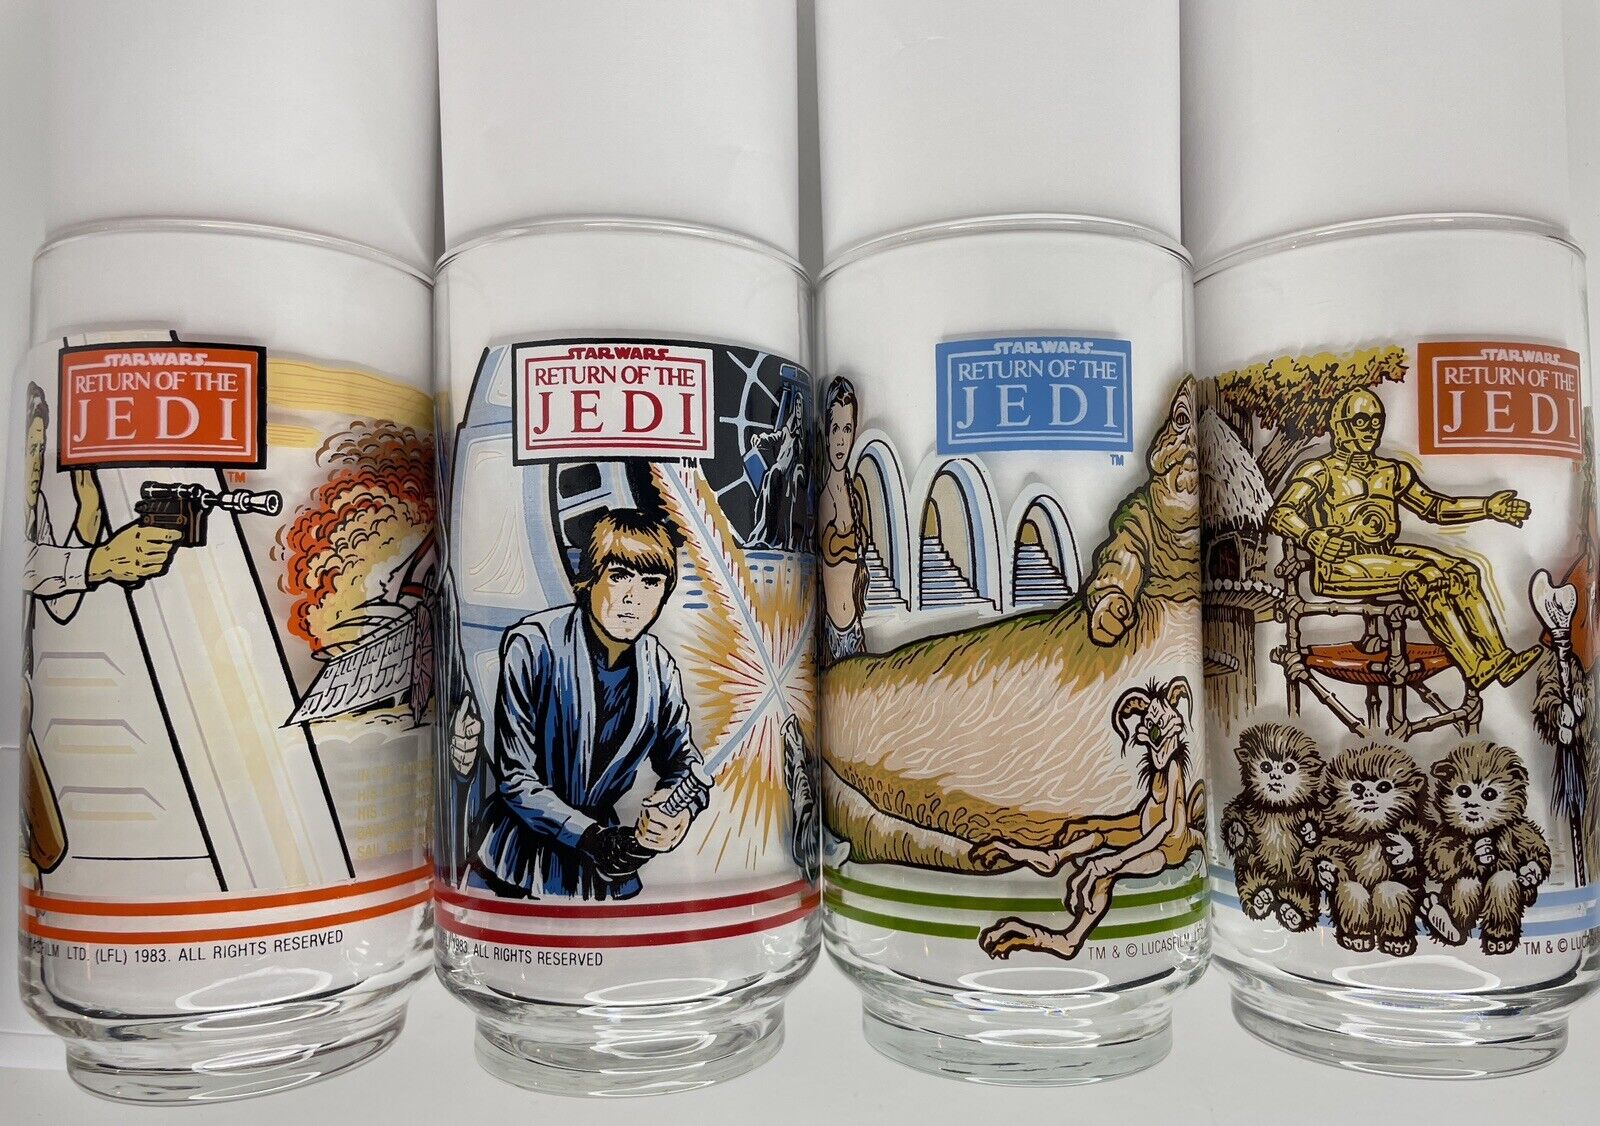 1983 Star Wars Return of the Jedi Burger King Glasses Complete Set of 4 